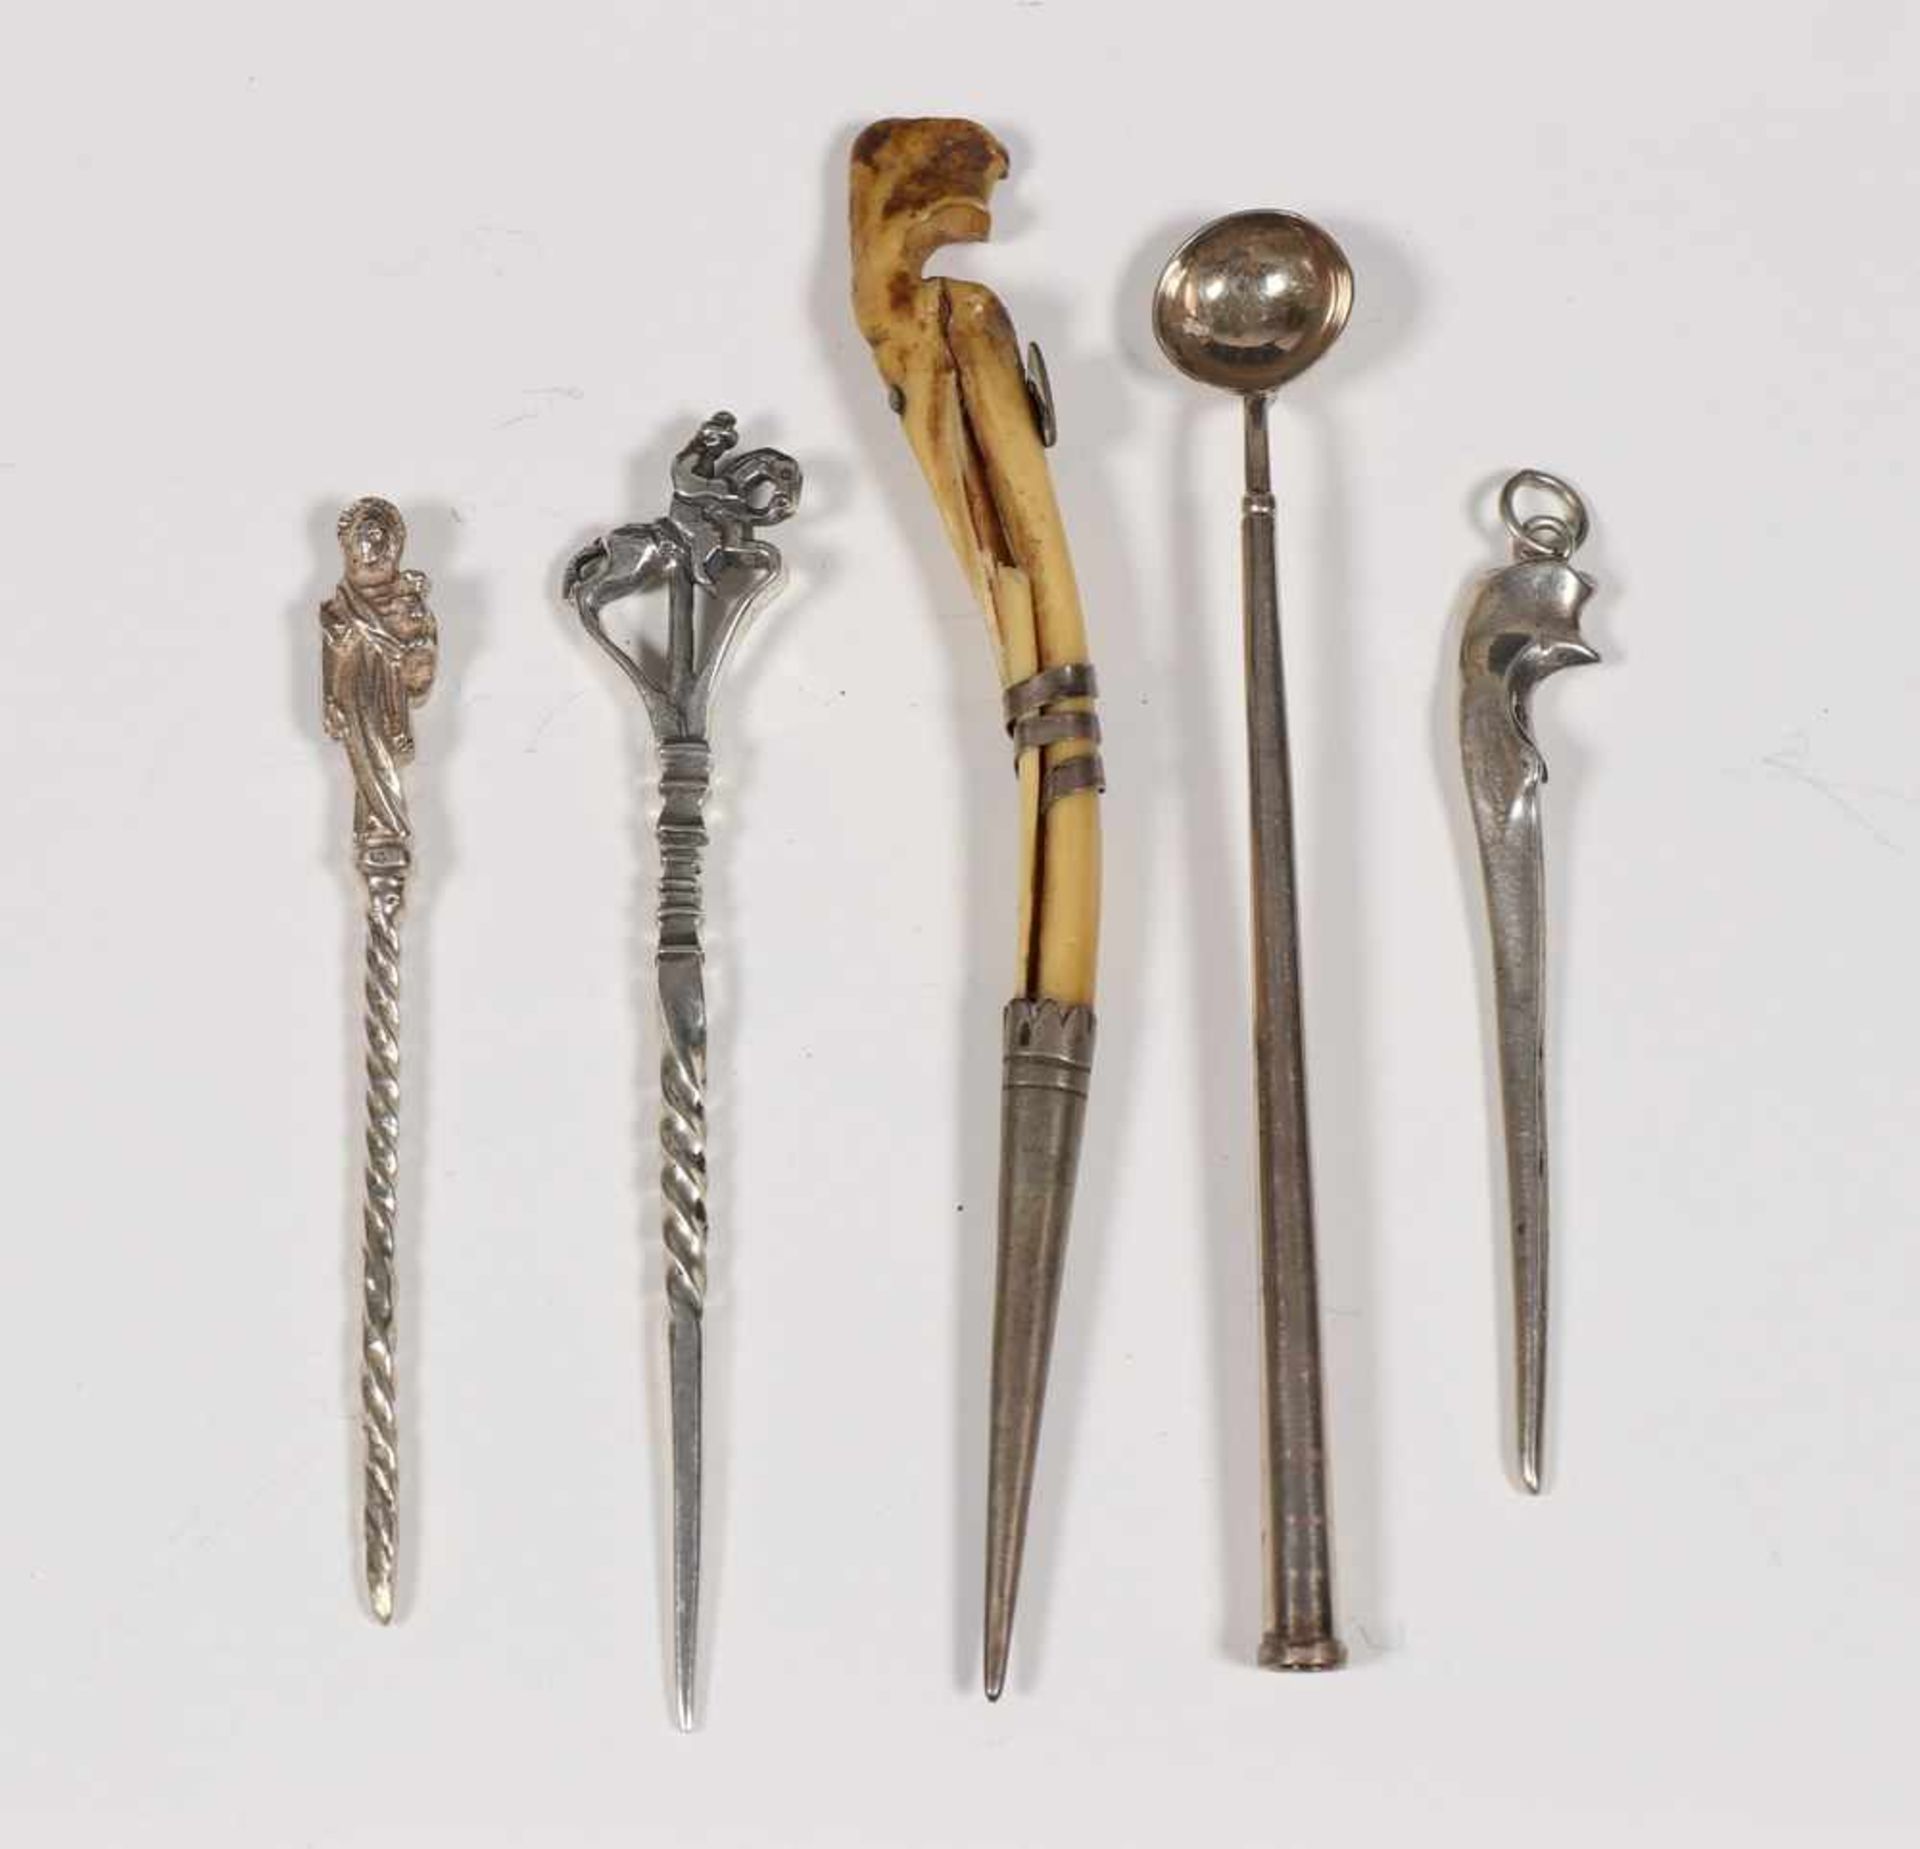 Vijf pijpenwroeters, 19e eeuw,zilver en been (hazesprong); 50